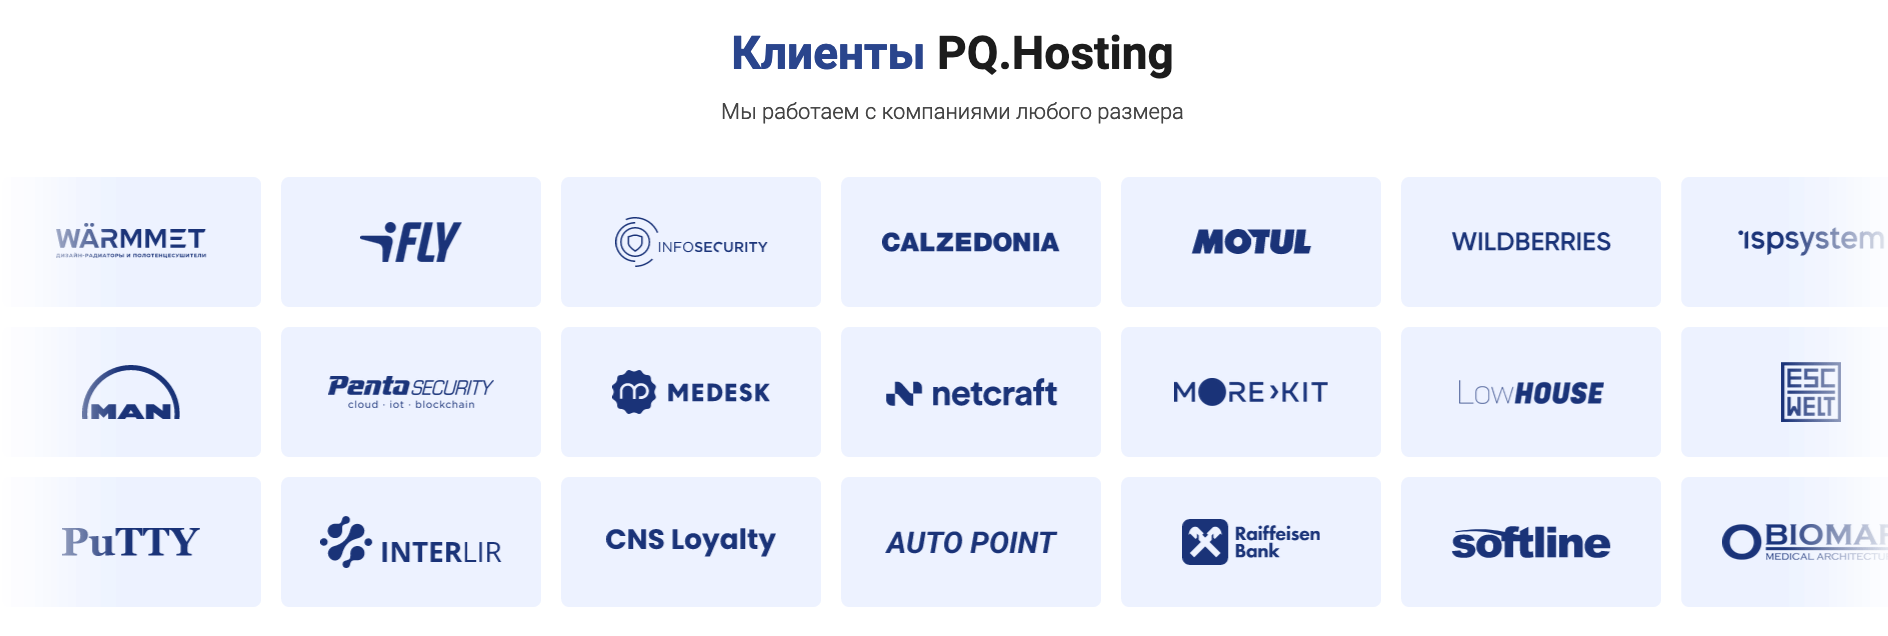 Screenshot von der Webseite von PQ Hosting, auf der verschiedene Logos von angeblichen Kunden gezeigt werden.